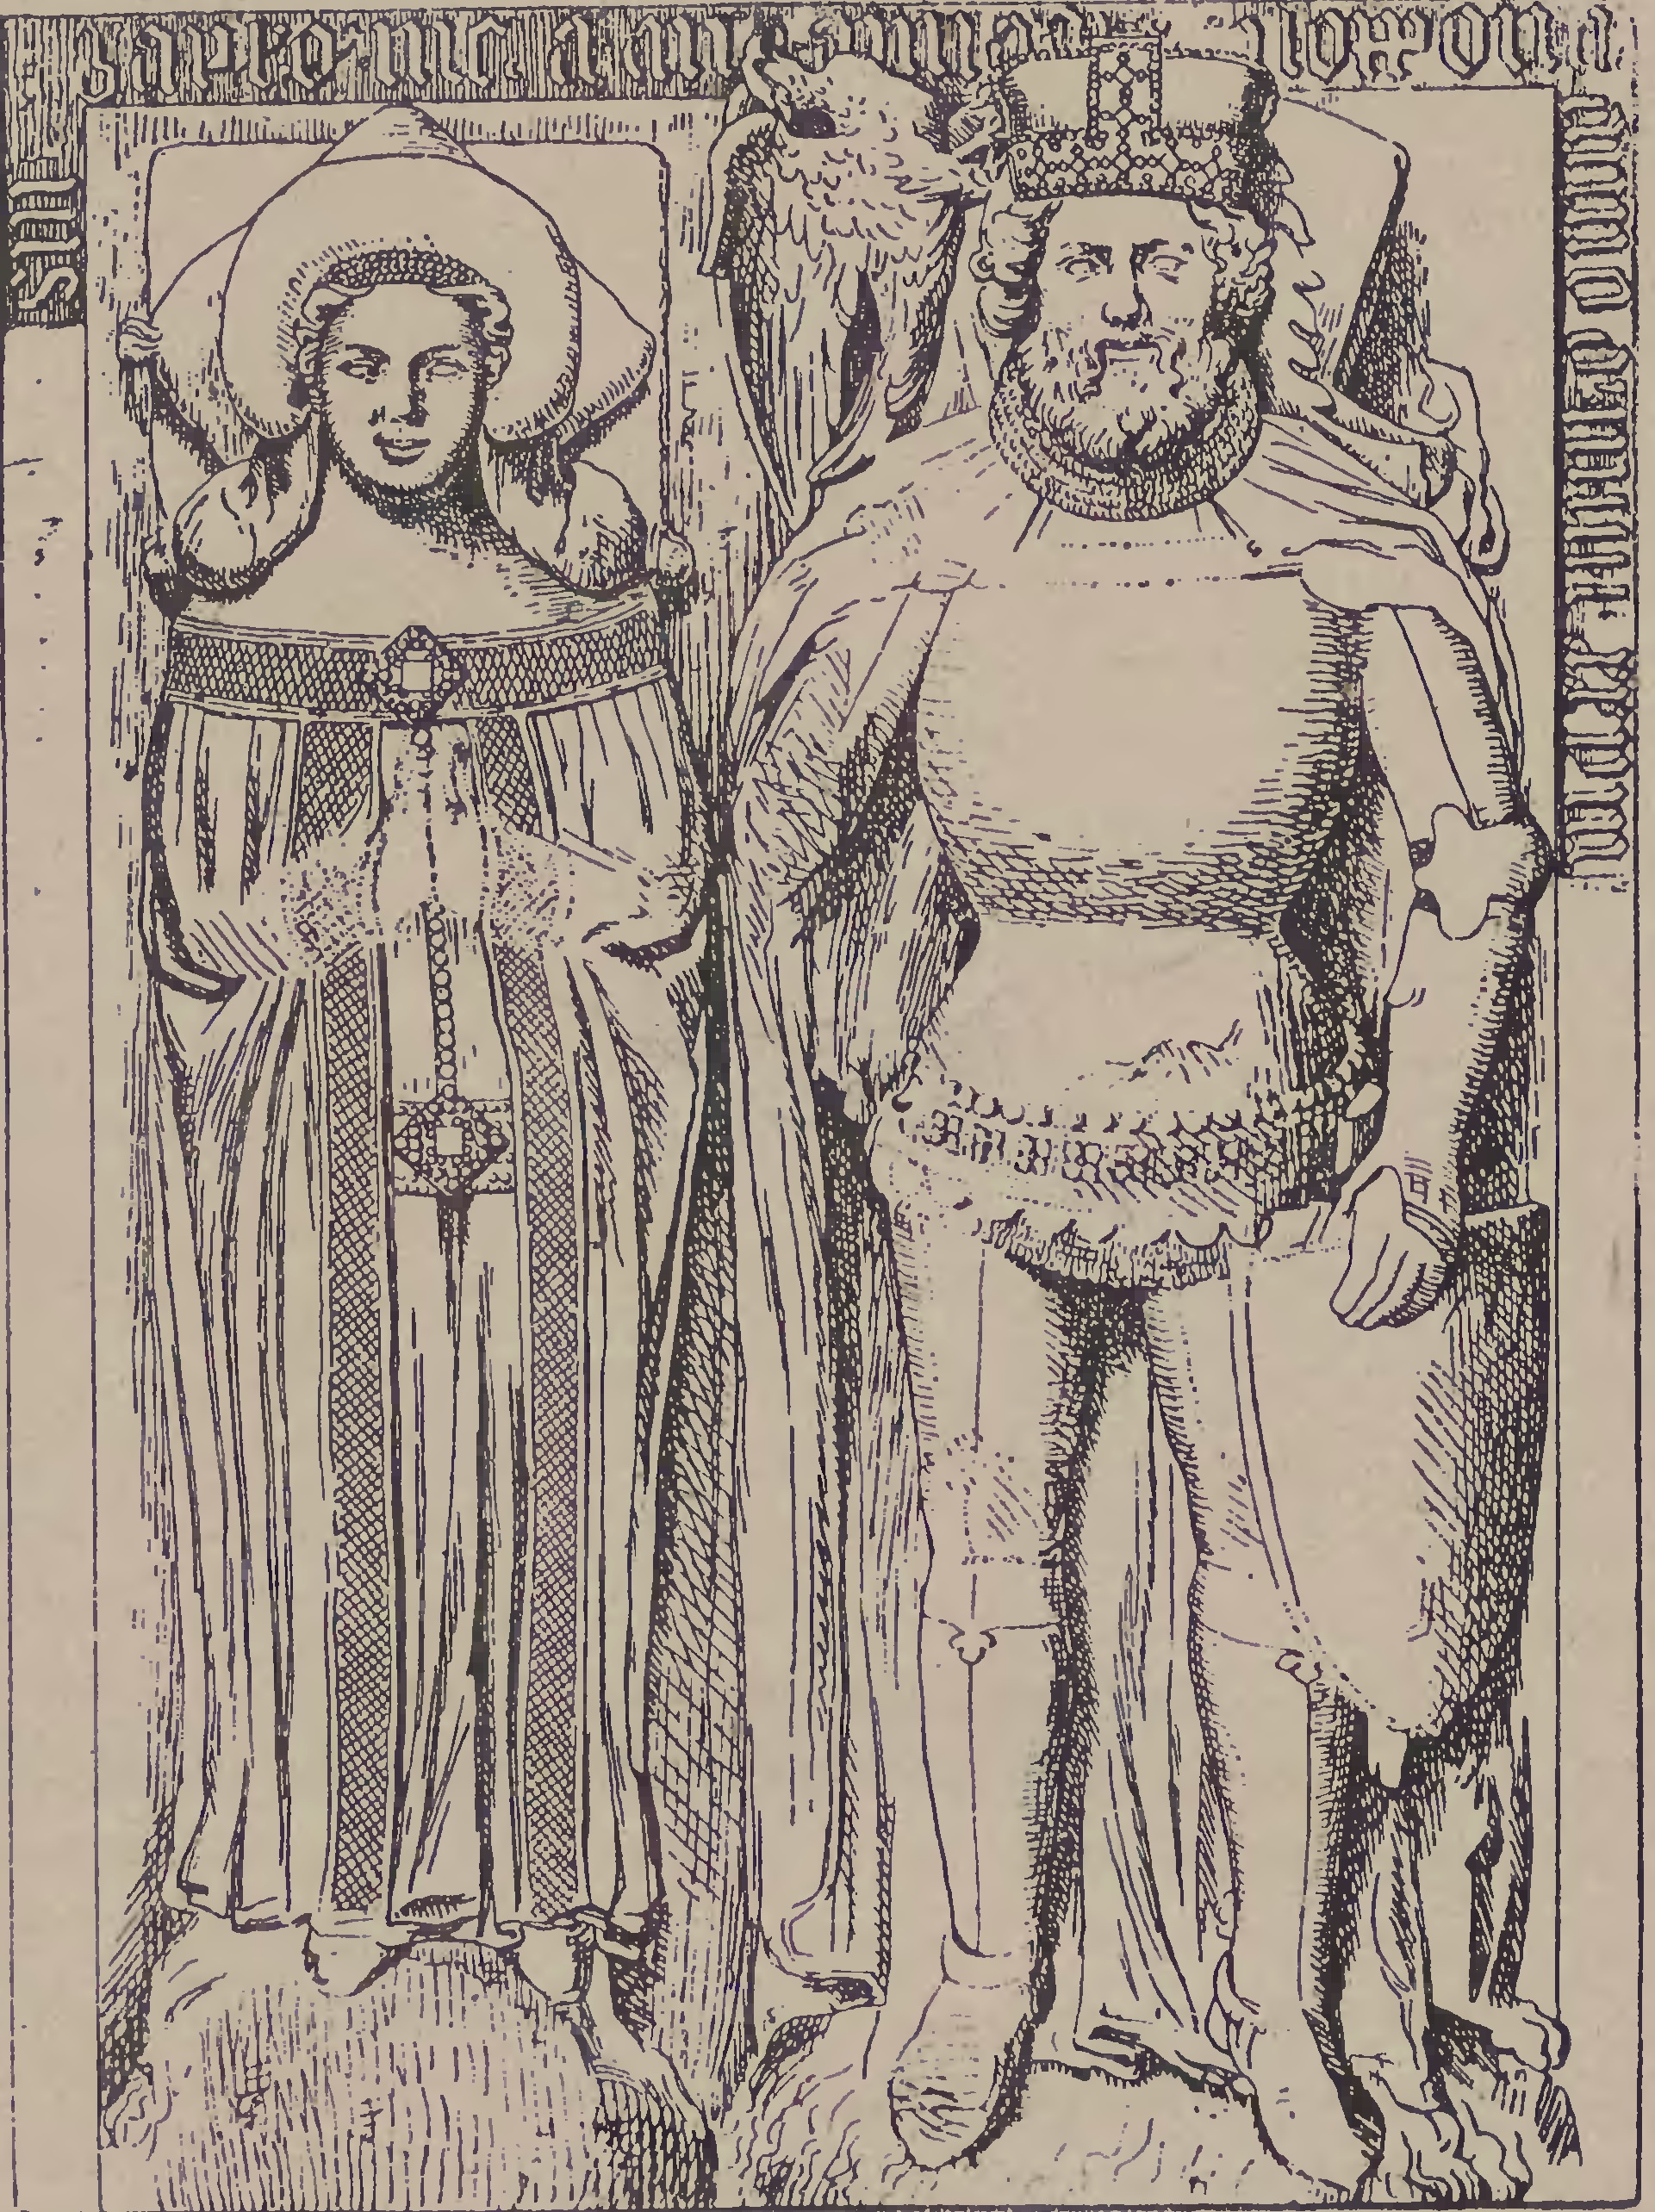 Książę opolski Bolesław II z żoną Anną (rycina na podstawie rzeźby nagrobnej)